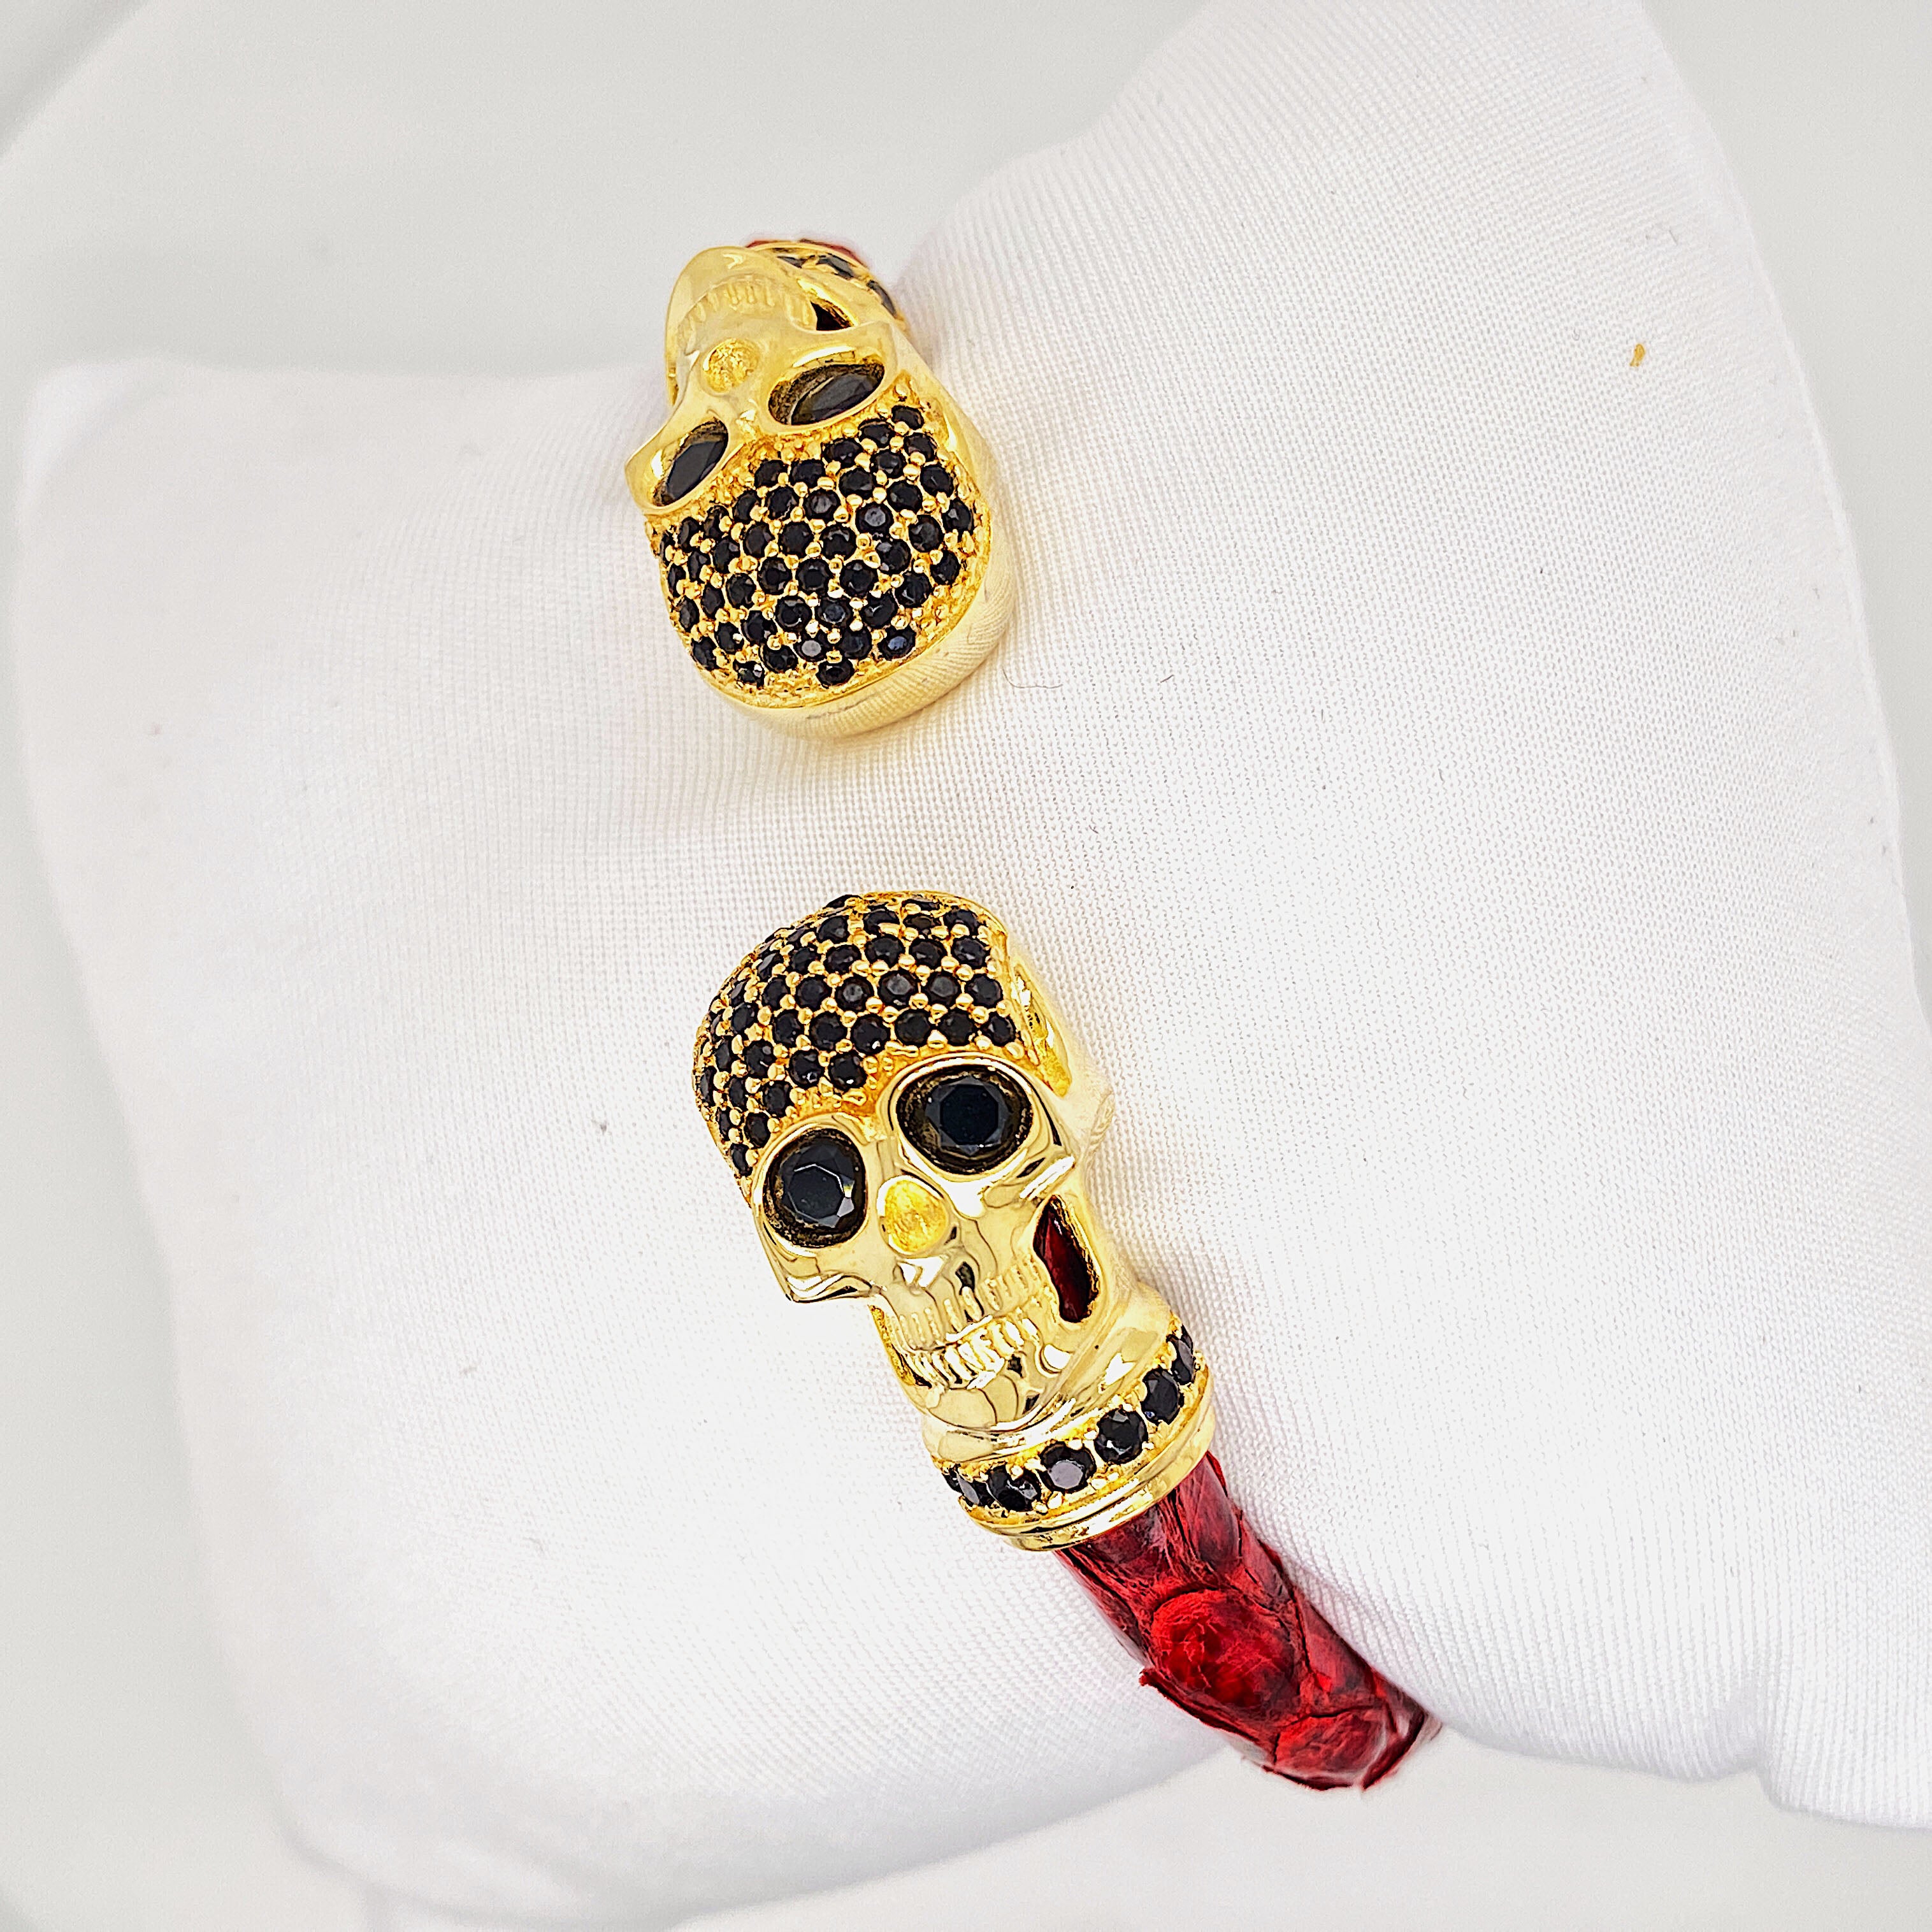 Red Python Bracelet - Gold Skull Head